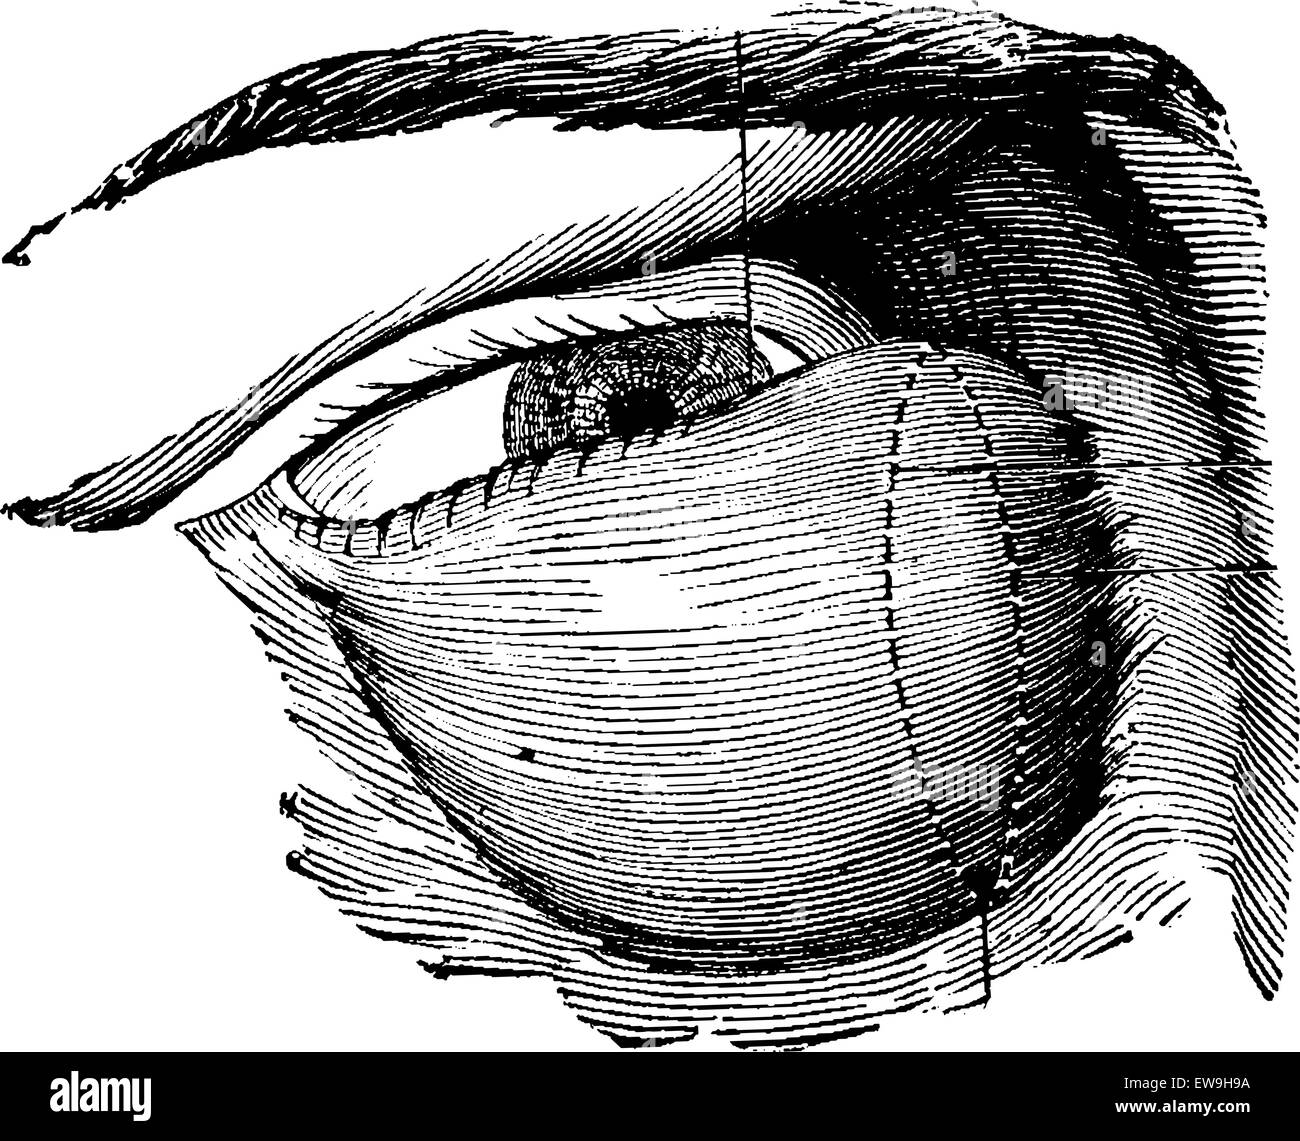 Altamente sviluppato tumore lacrimale, vintage illustrazioni incise. Al solito Dizionario medicina dal dr. Labarthe - 1885 Illustrazione Vettoriale